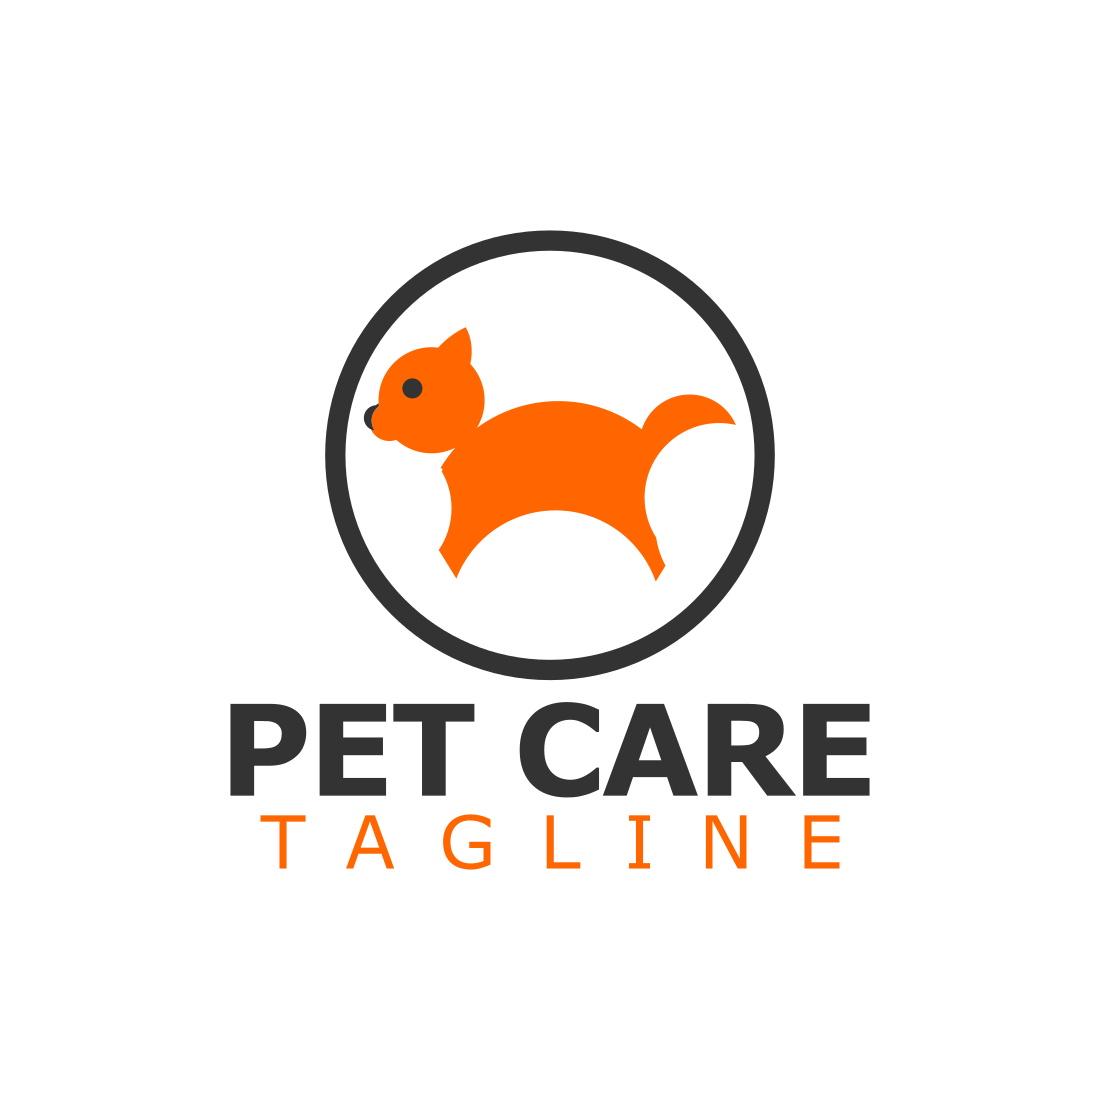 Elegant Pet Care Logo Design Template previews.